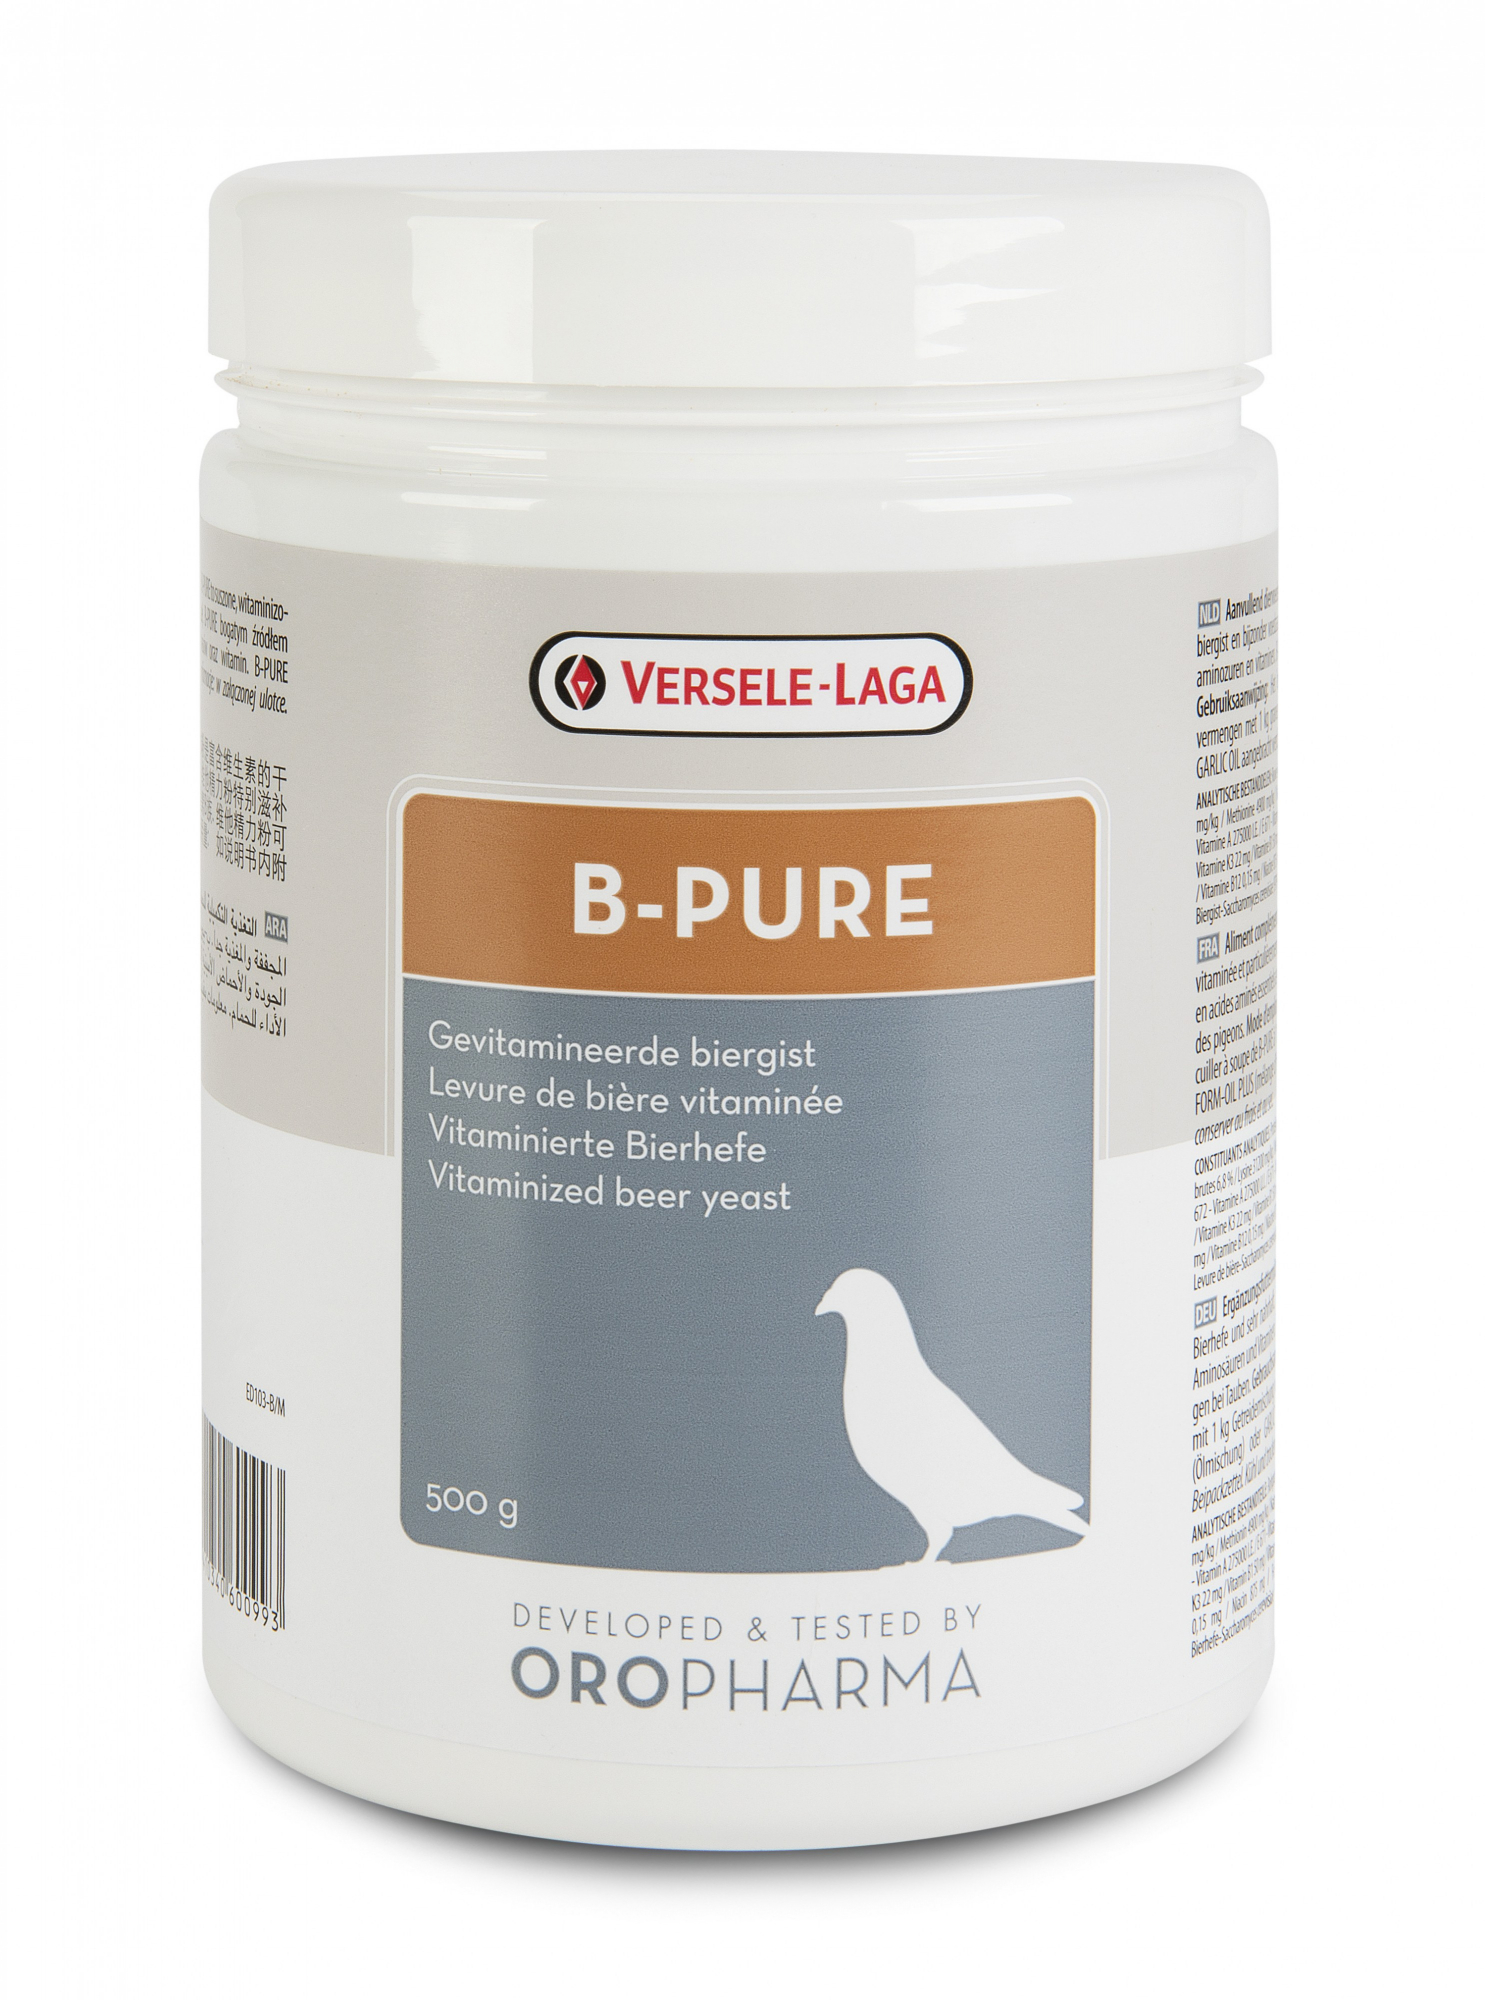 Oropharma B-Pure, levure de bière vitaminée